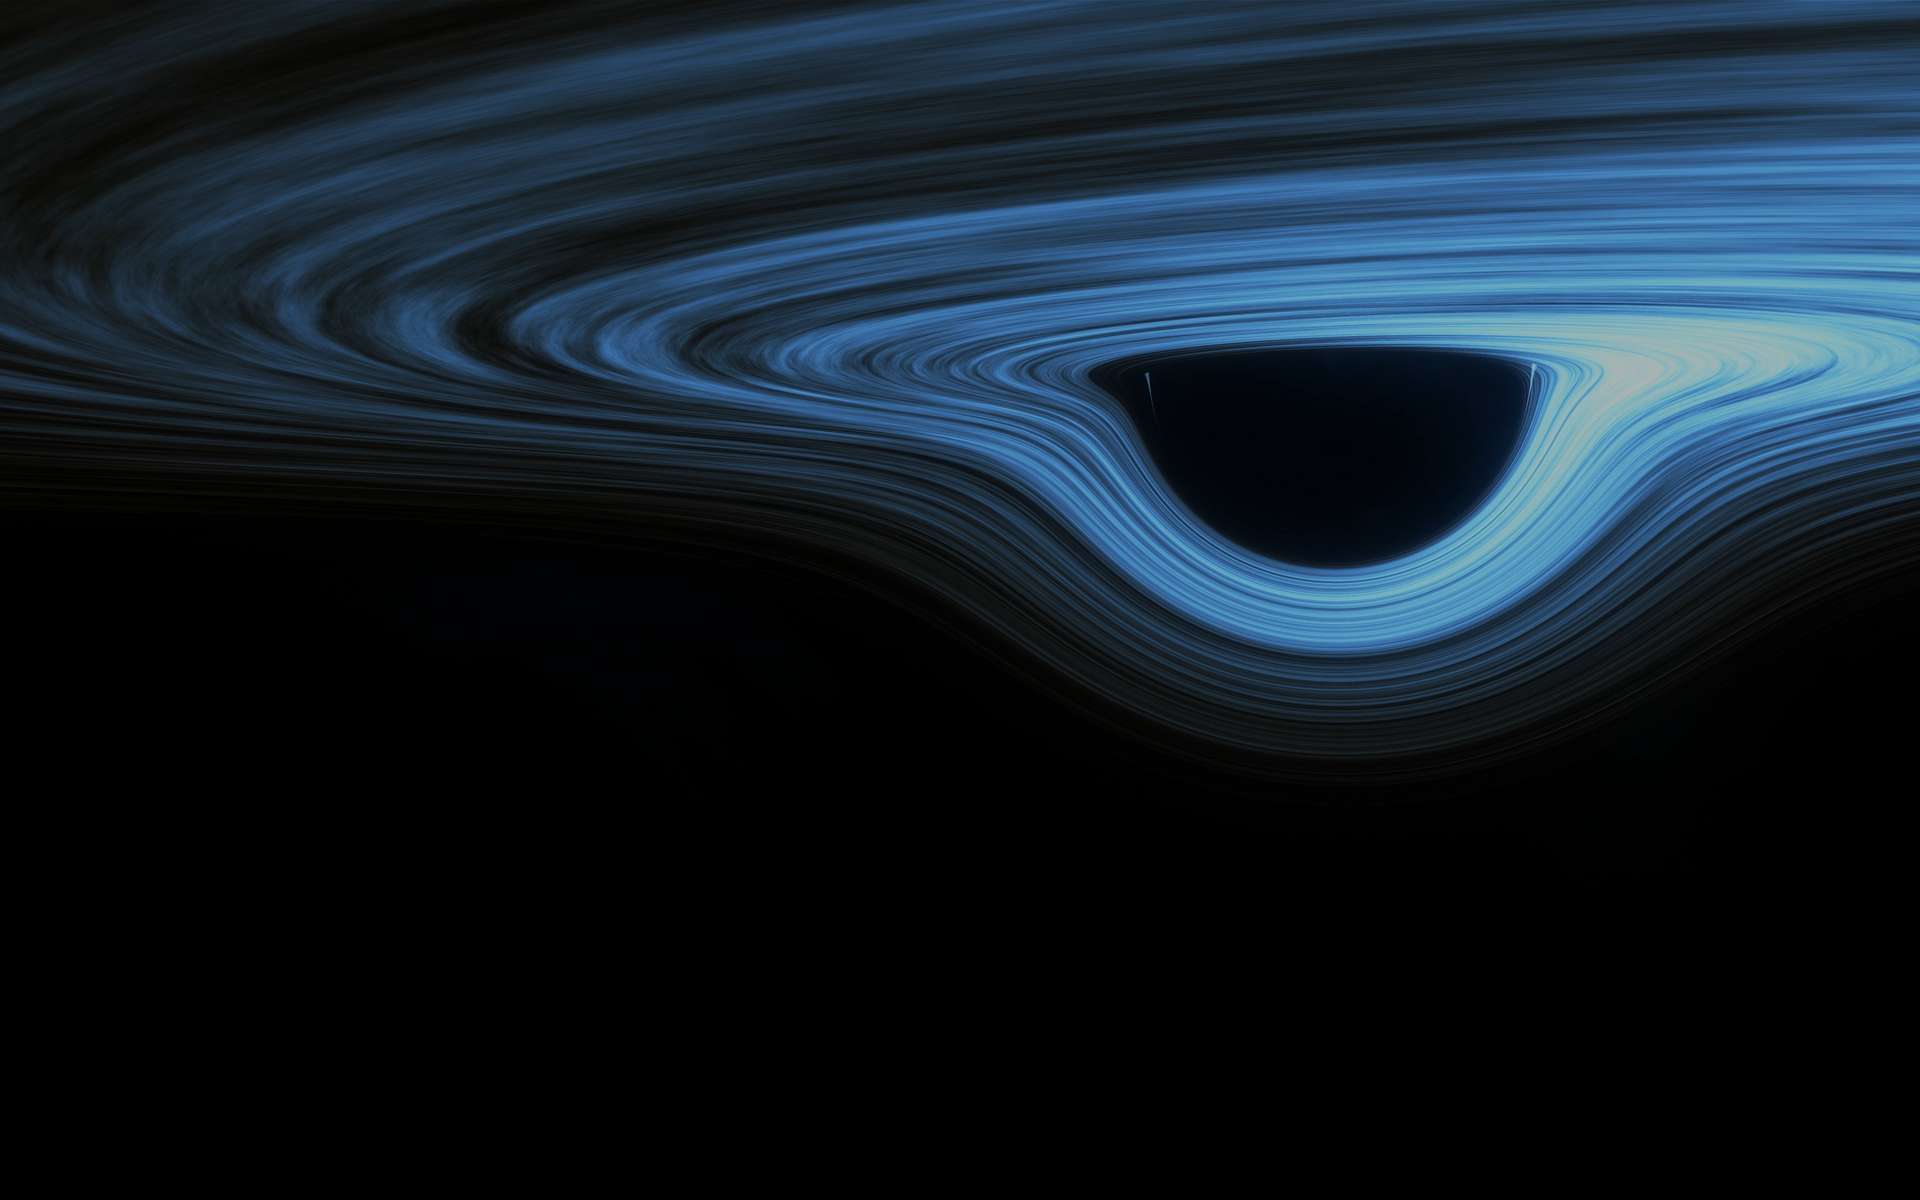 Le trou noir supermassif a été étudié grâce aux données de l'observatoire de rayons X Chandra de la Nasa. © Tyler Hulett, Adobe Stock